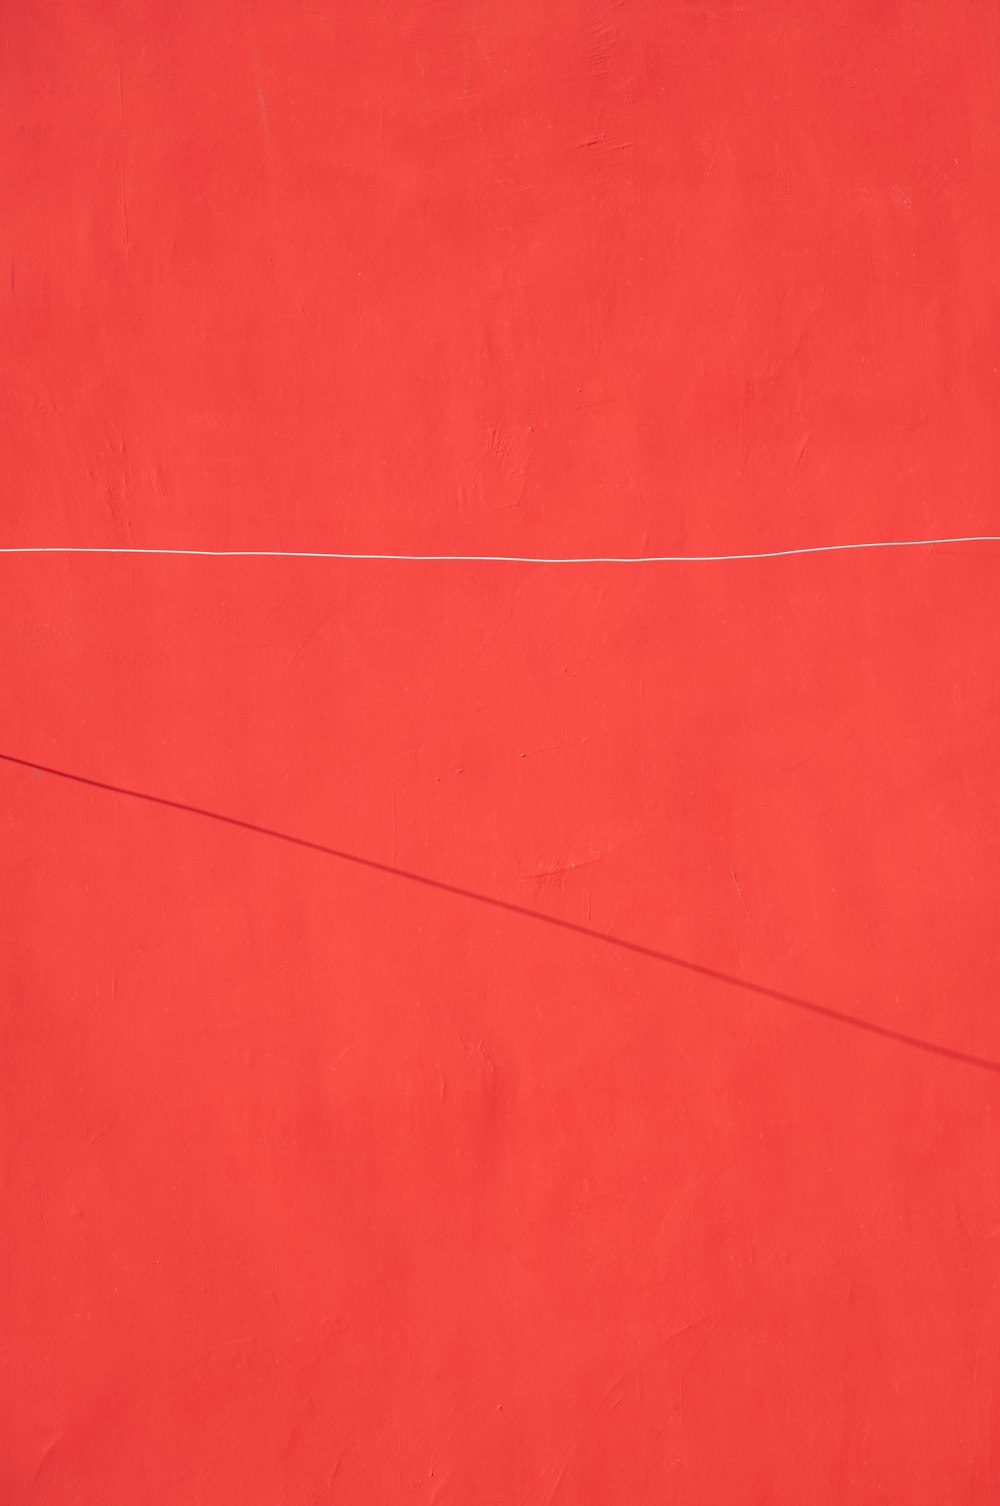 eine rote Wand mit einer weißen Linie darauf